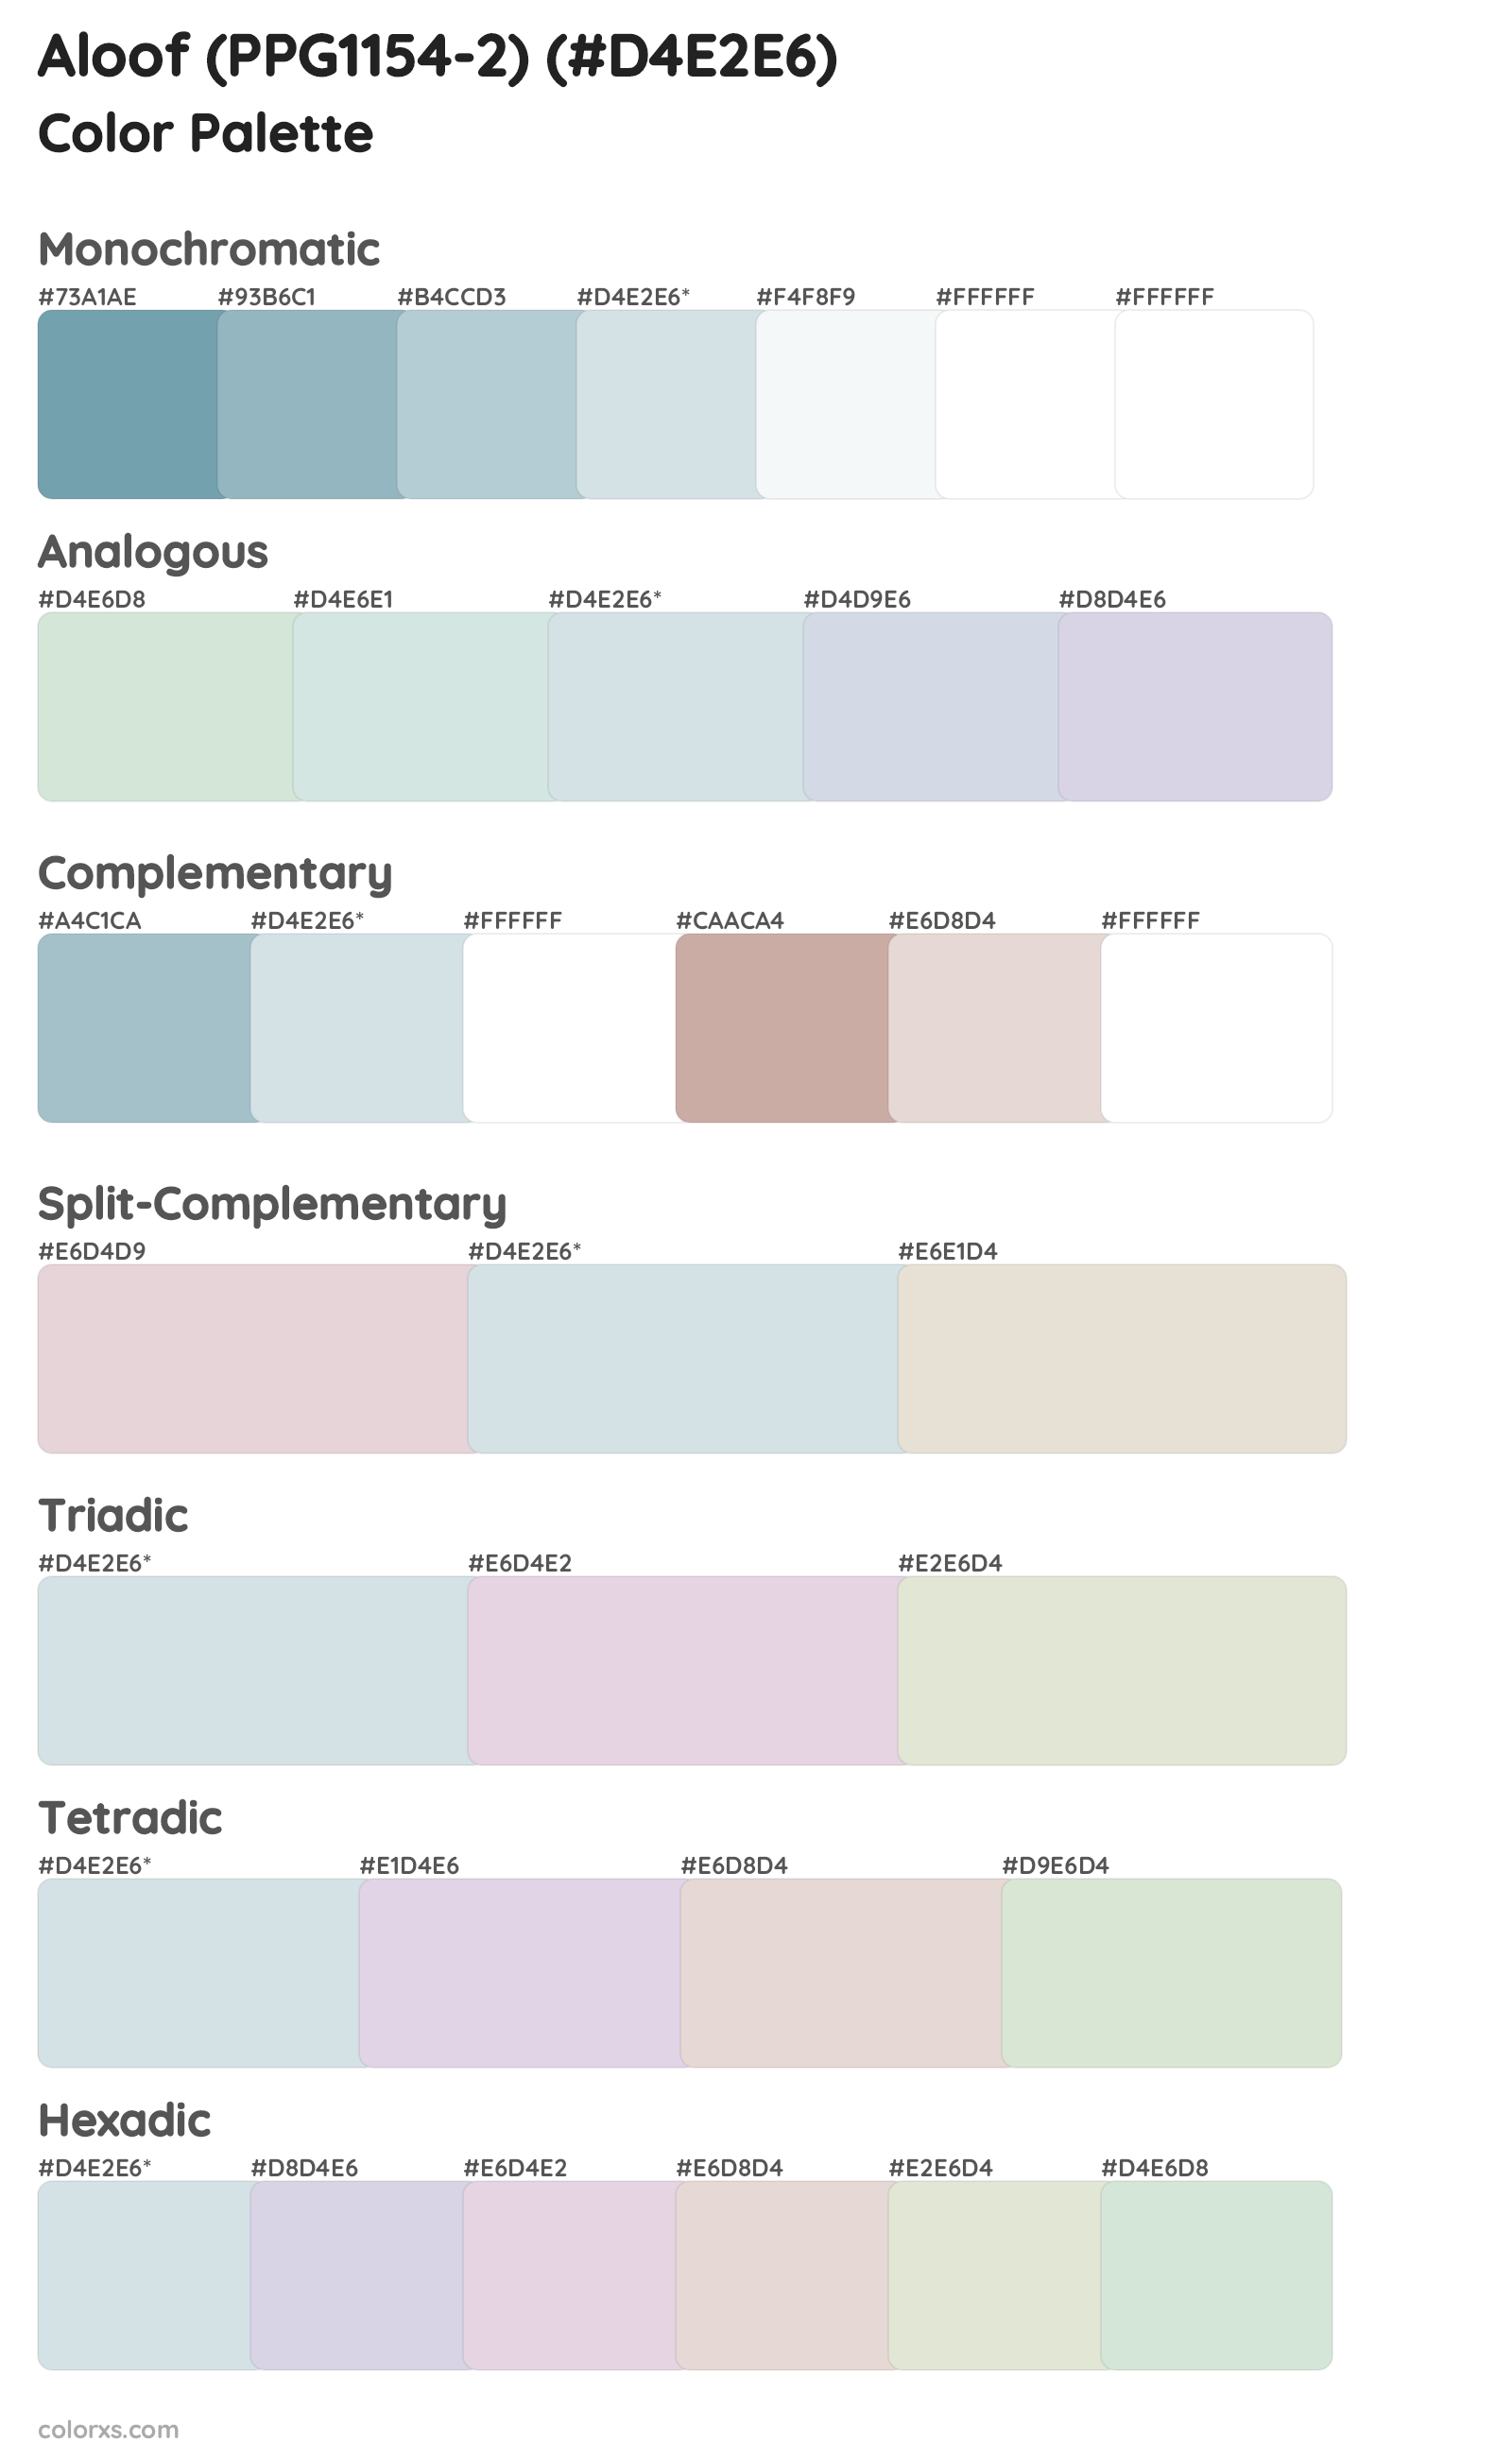 Aloof (PPG1154-2) Color Scheme Palettes